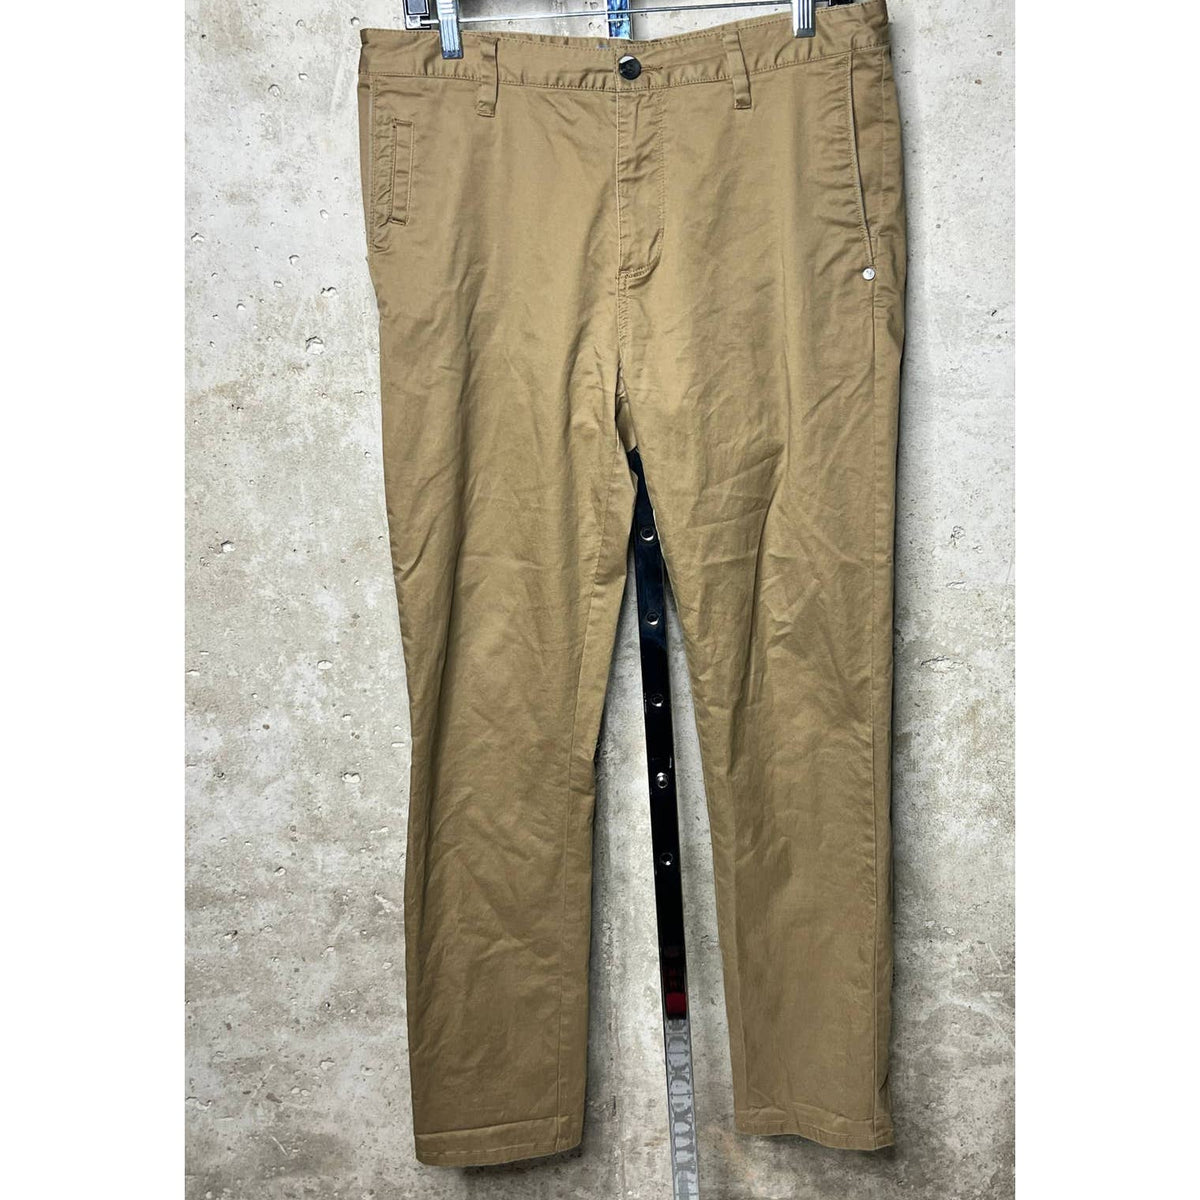 Vuori Brown Pants Sz.33